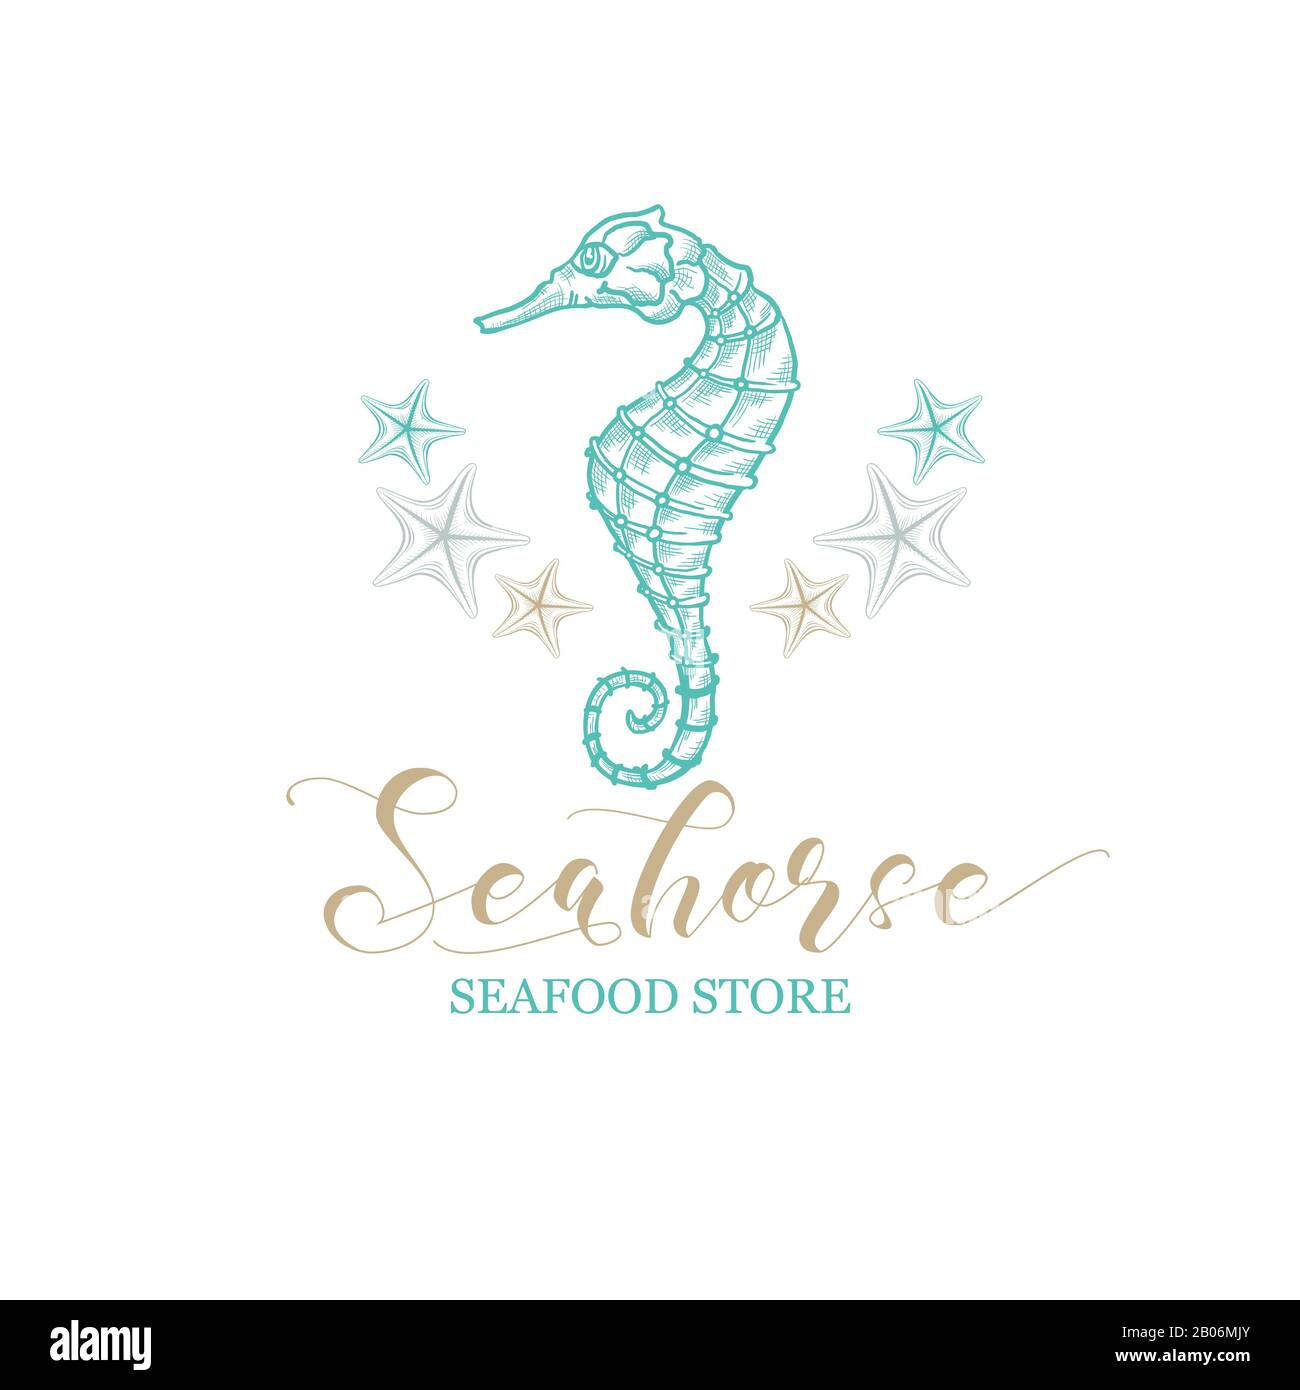 Logo Seahorse Vector pour les magasins de fruits de mer et de poissons. Hippocampe marin et étoiles de qualité supérieure avec calligraphie dorée dans un dessin en ligne fine et un style d'éclosion de crayon Illustration de Vecteur